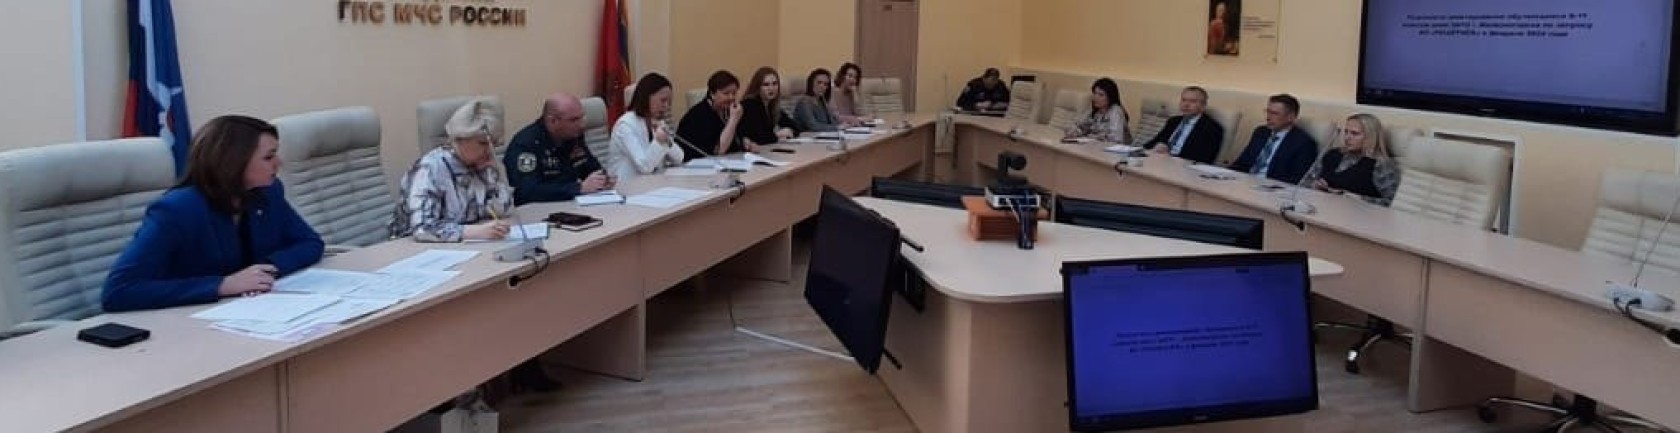 Общественники Железногорска обсудили вопросы профориентации молодежи